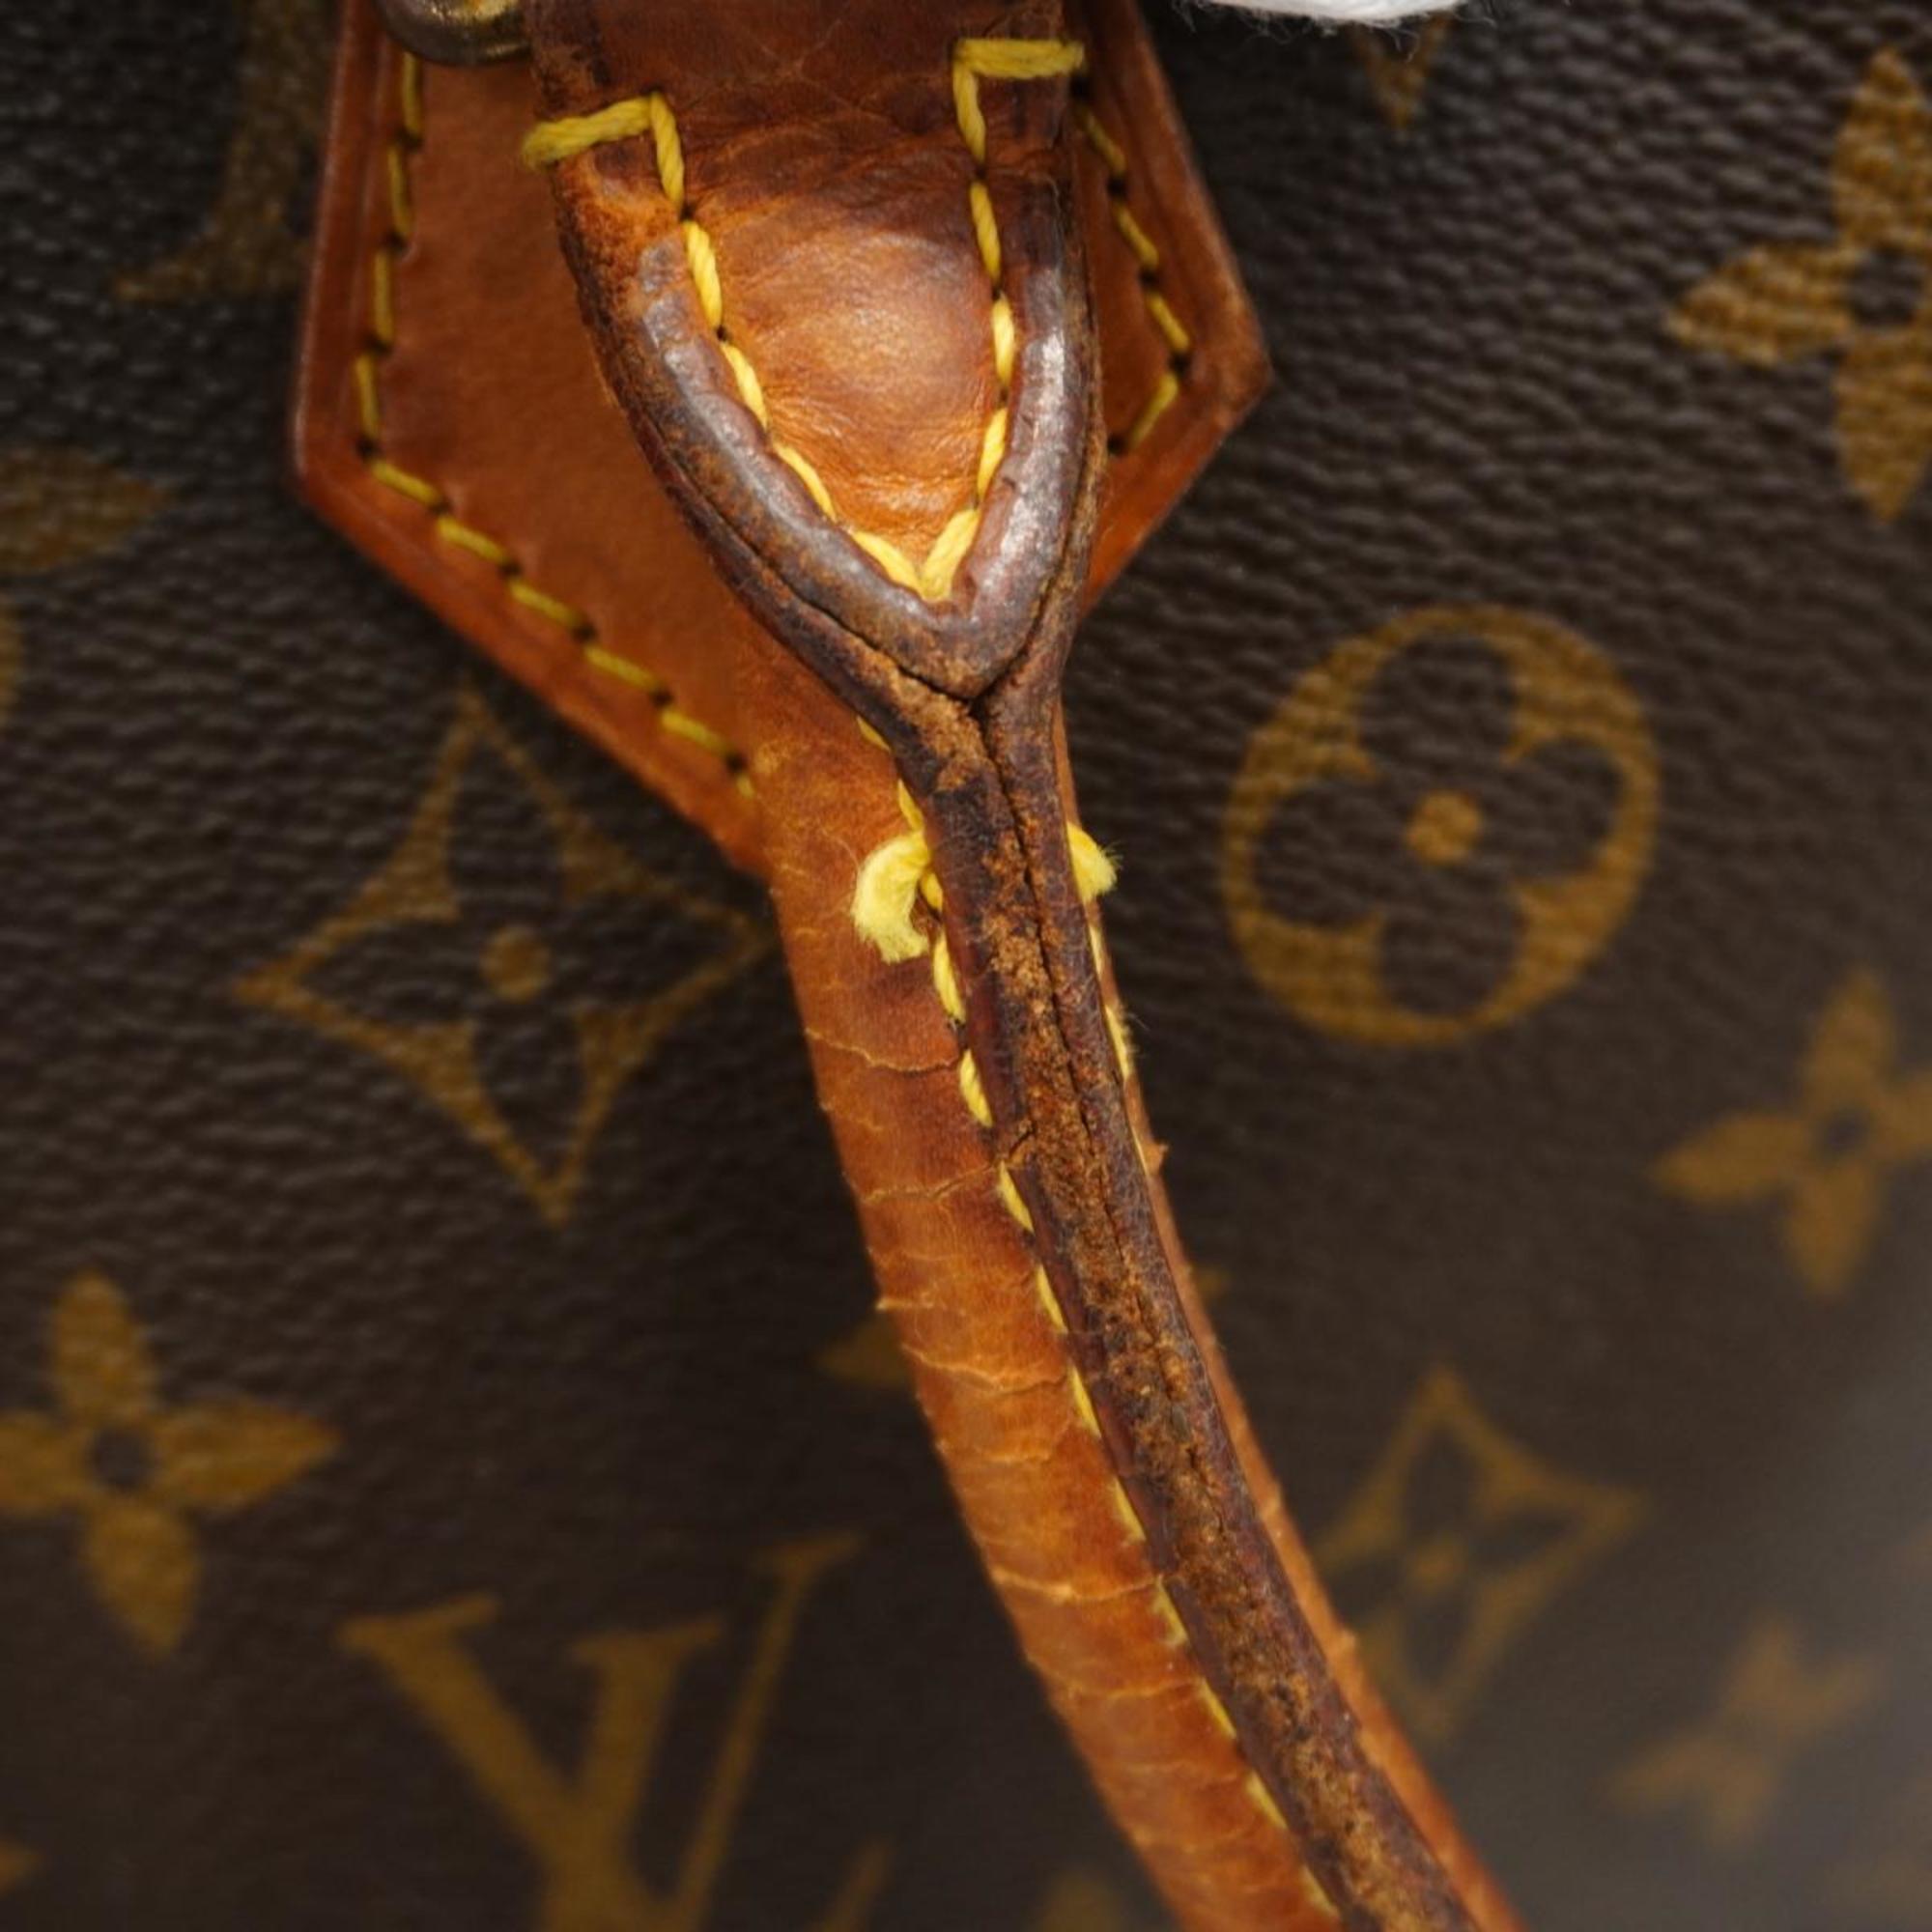 ルイ・ヴィトン(Louis Vuitton) ルイ・ヴィトン トートバッグ モノグラム サックプラ M51140 ブラウンレディース